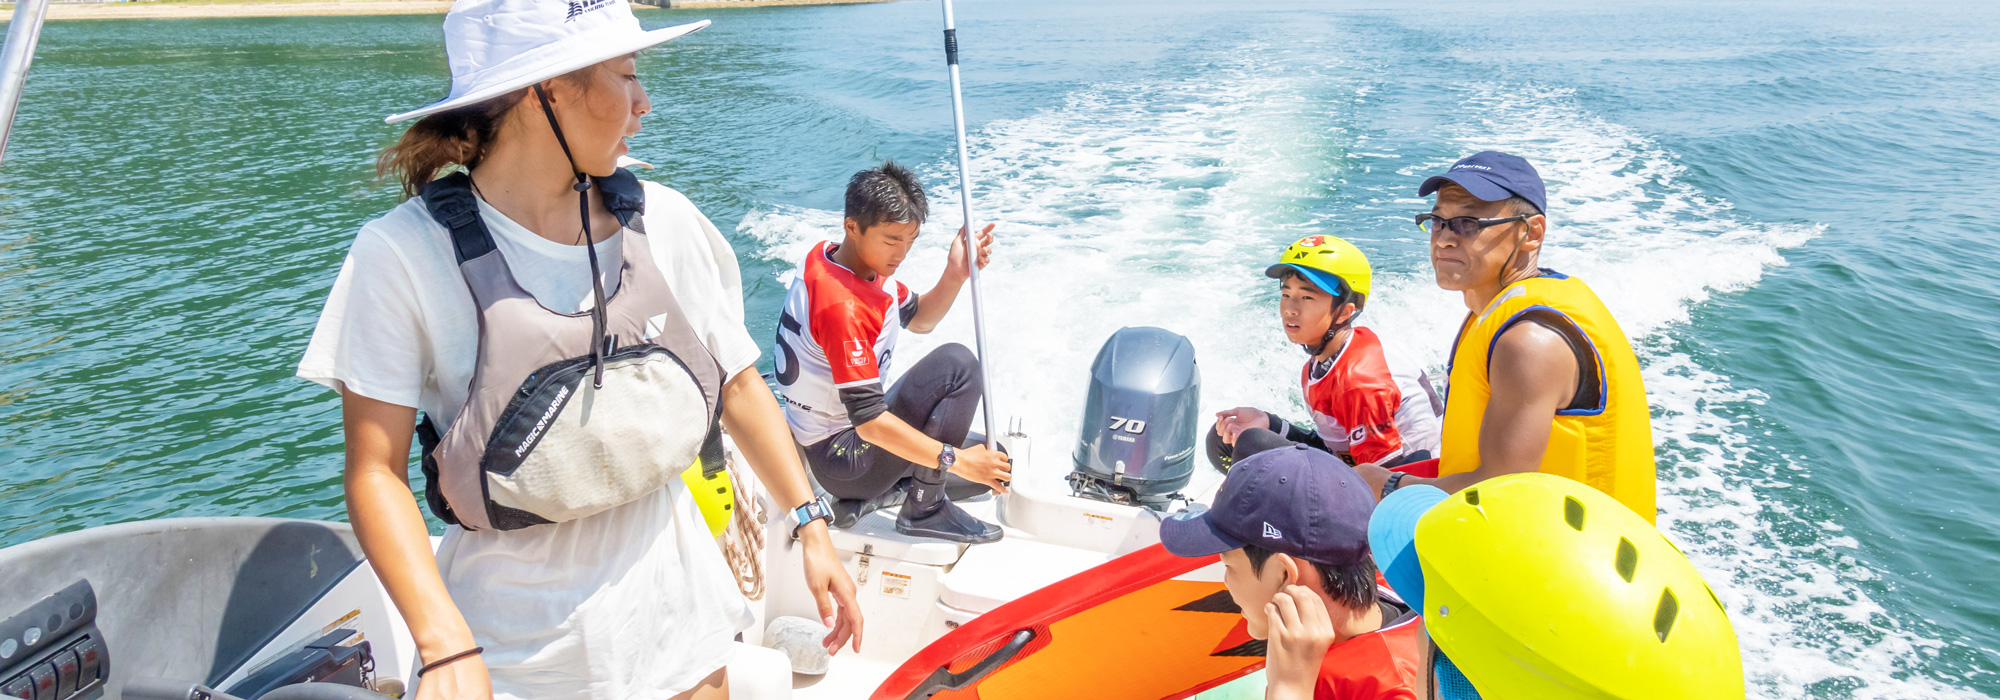 穏やかな瀬戸内海の離島・香川県の小豆島の海で貸切クルージングを楽しむ